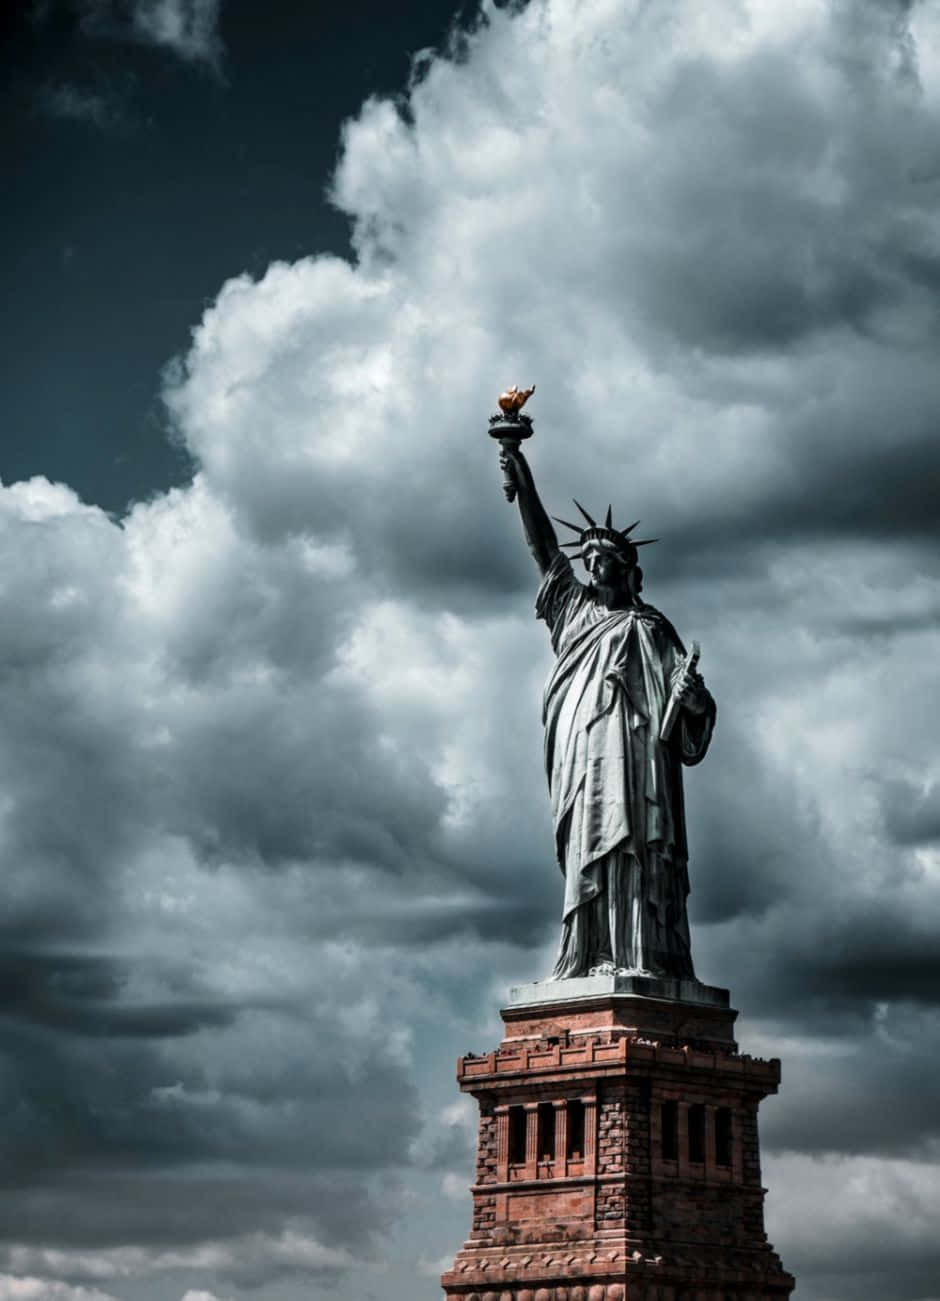 Aicônica Estátua Da Liberdade Ergue-se Imponente Na Cidade De Nova York.